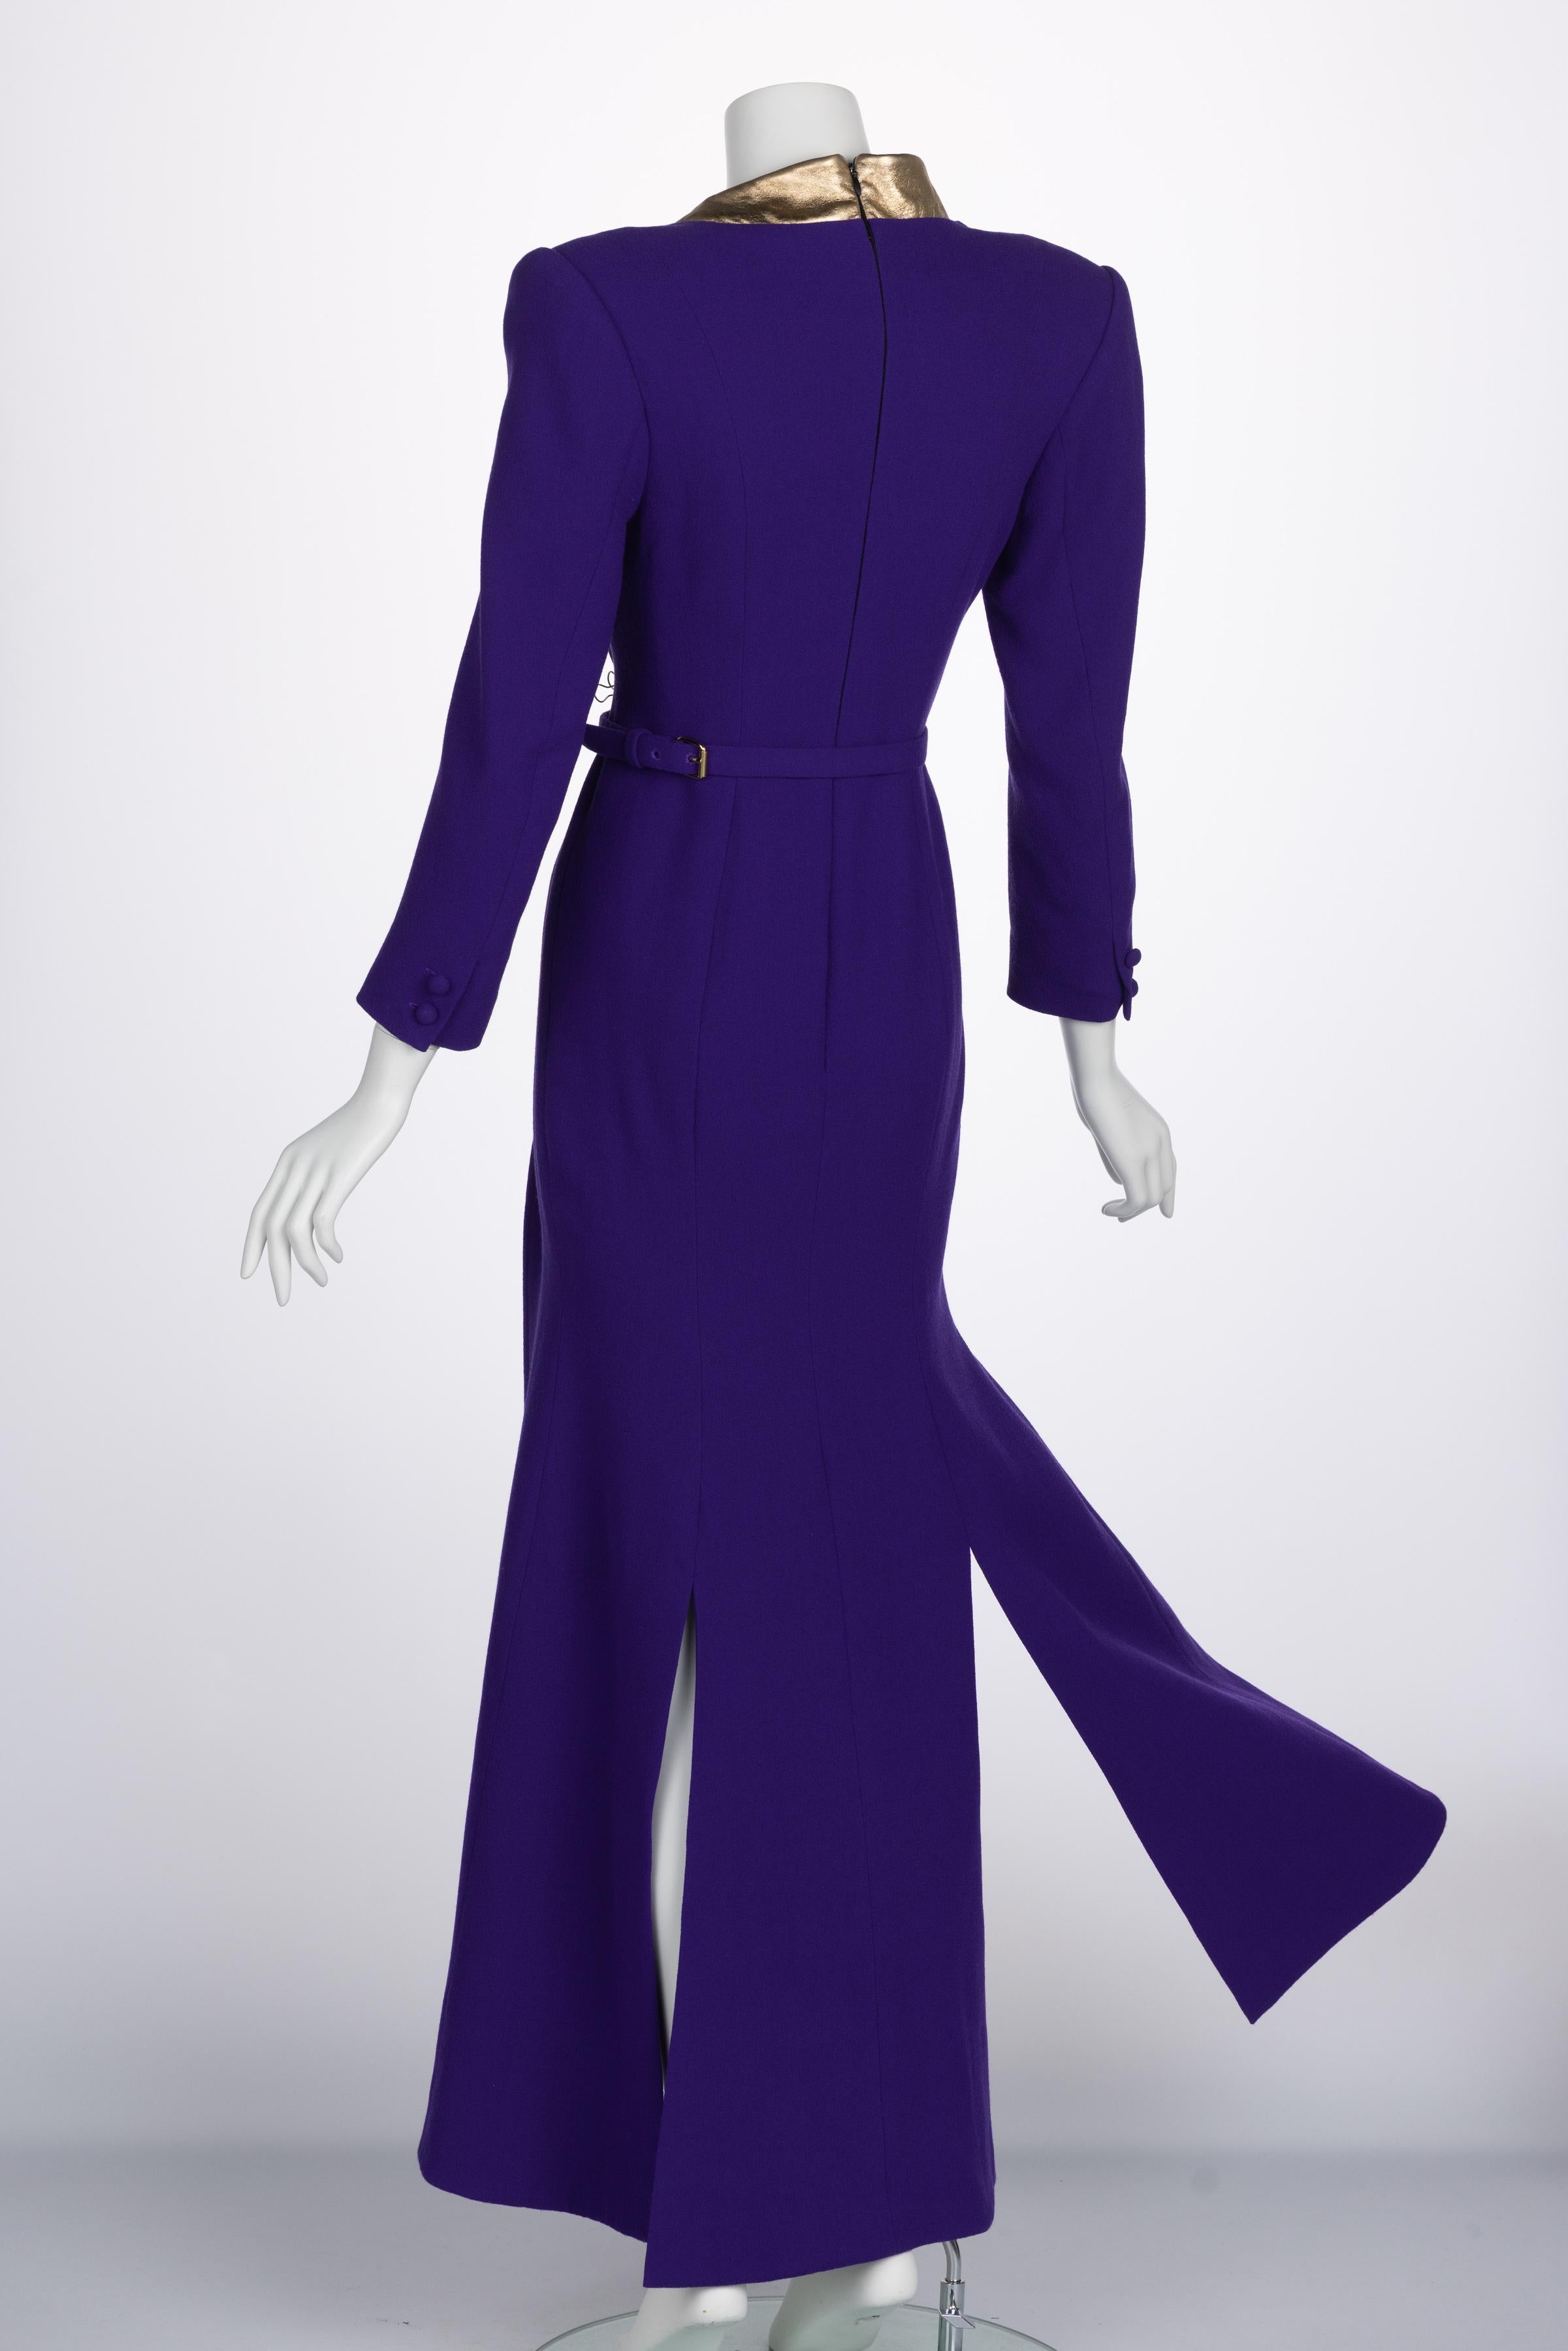 Women's Ronald Van der kemp Haute Couture Dress, 2018 For Sale